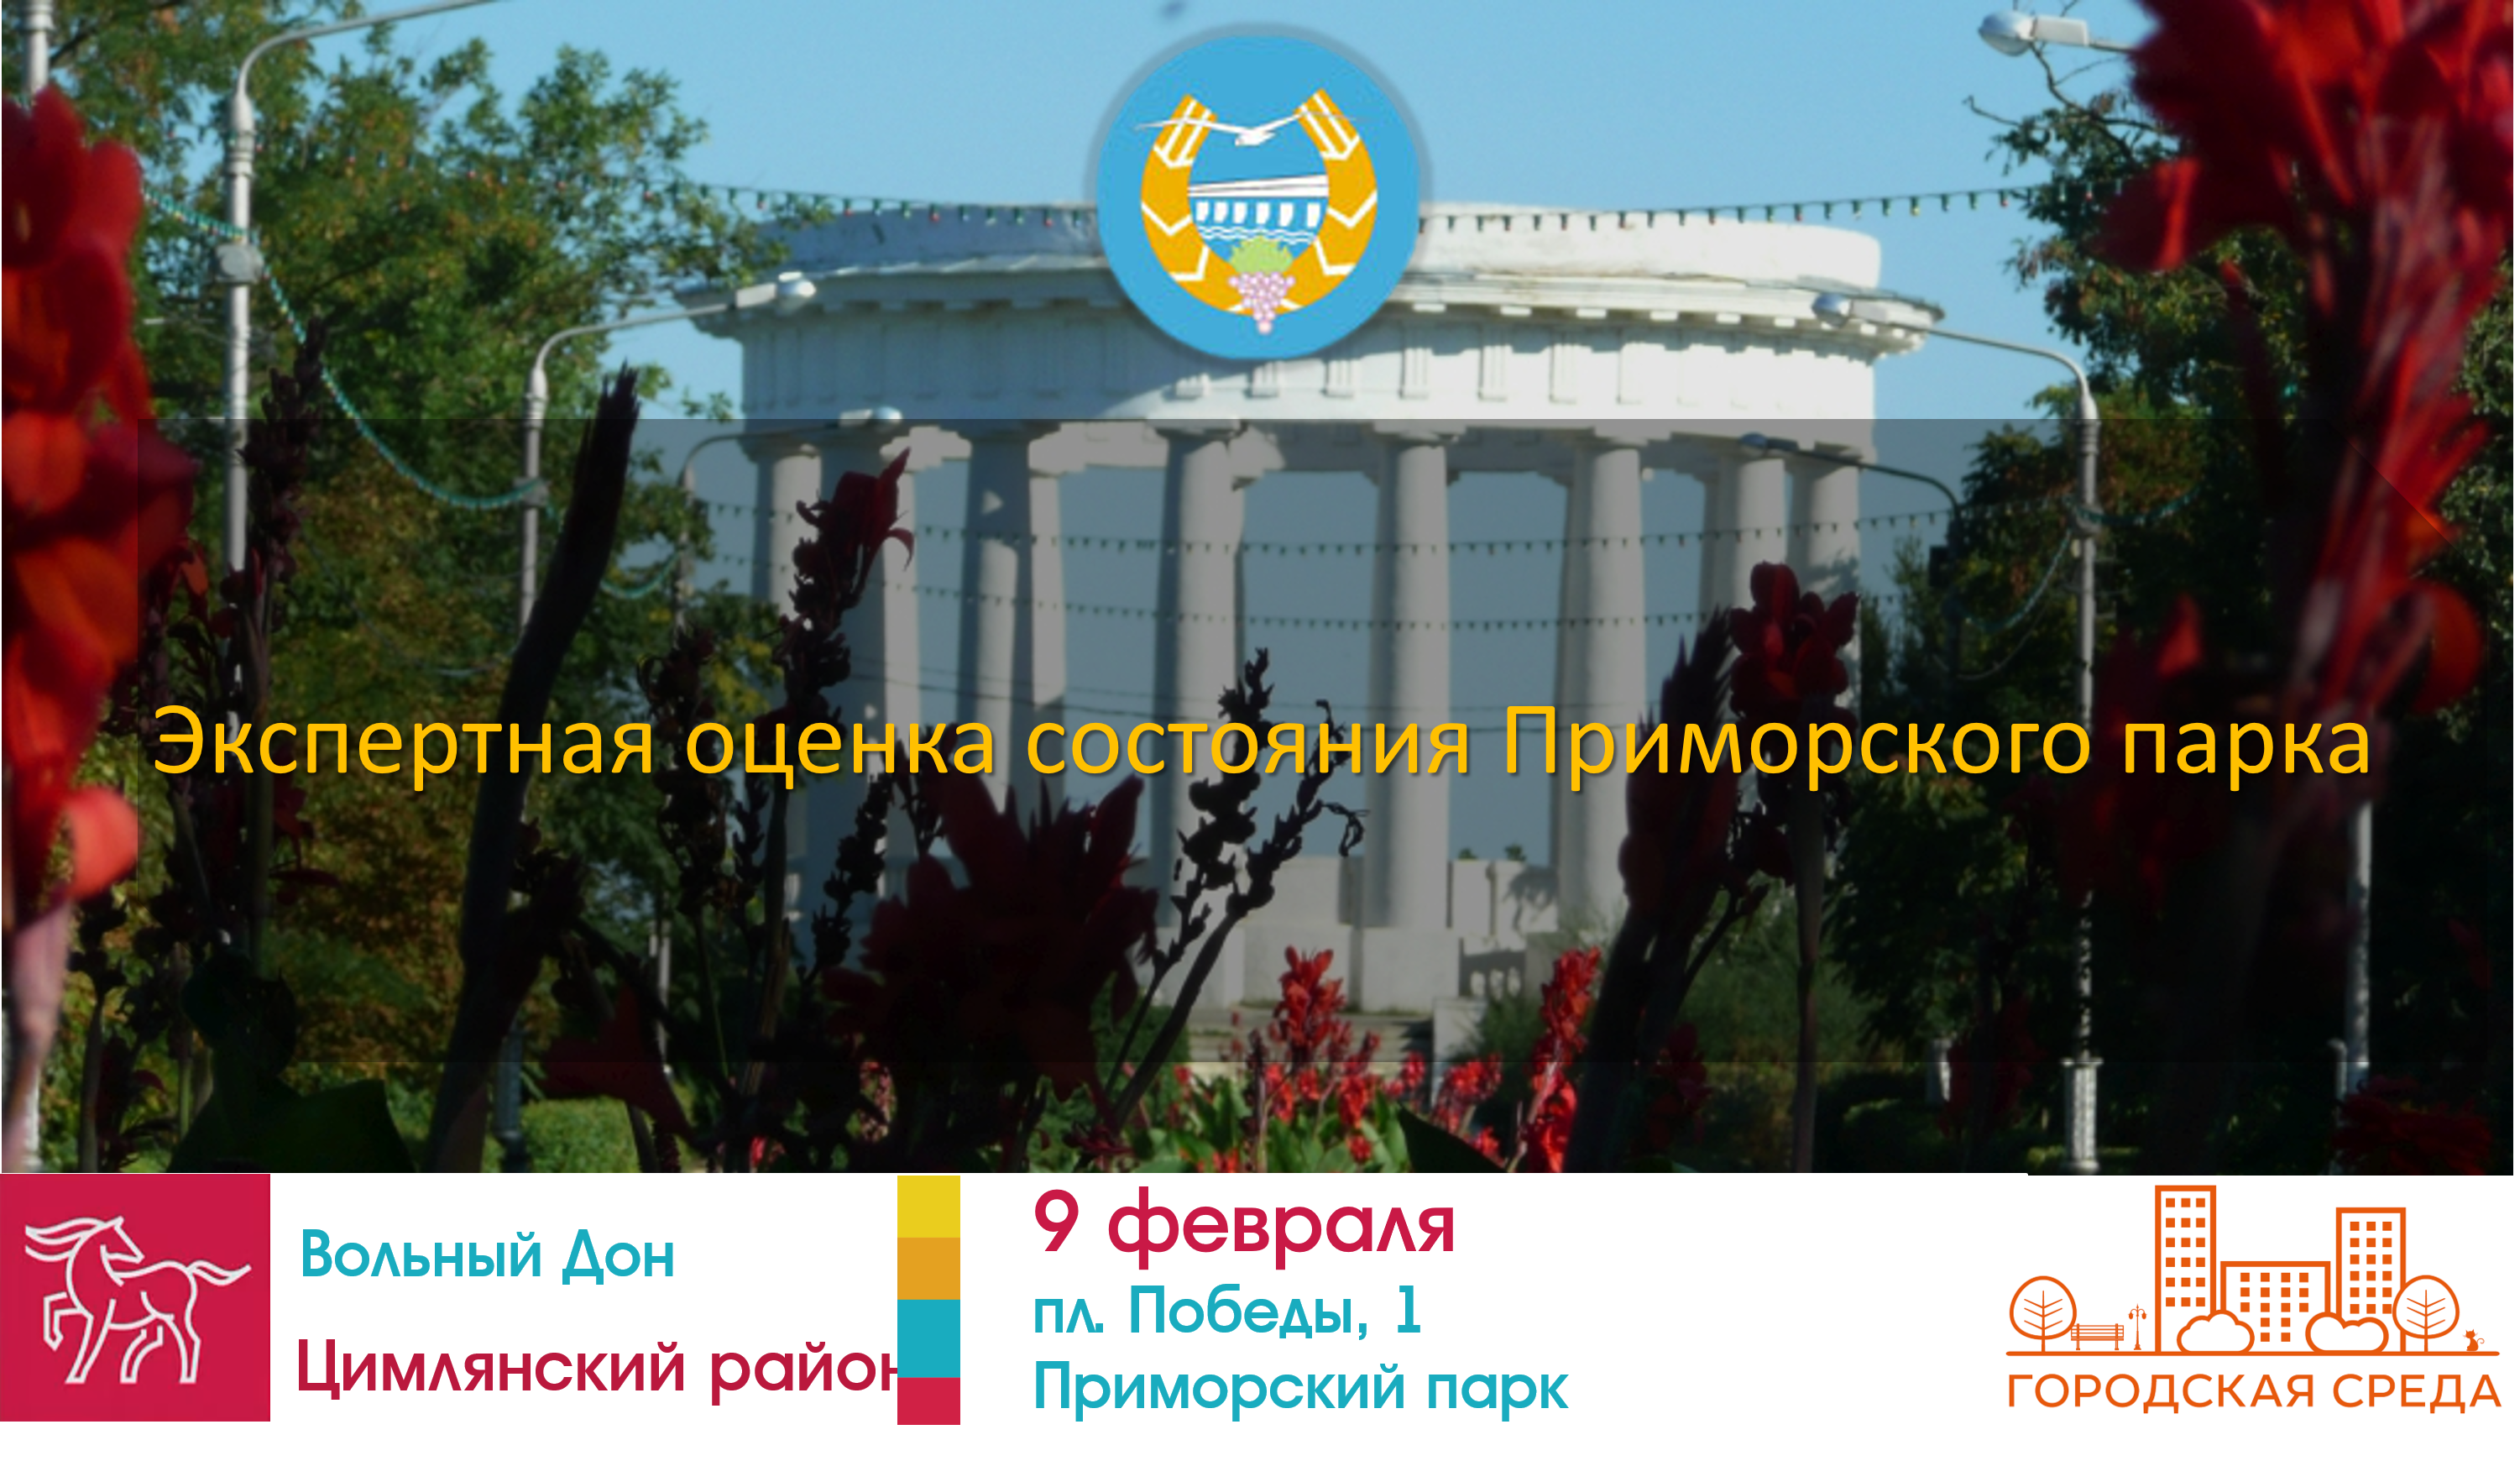 9 февраля состоится мероприятие по экспертной оценке состояния Приморского парка